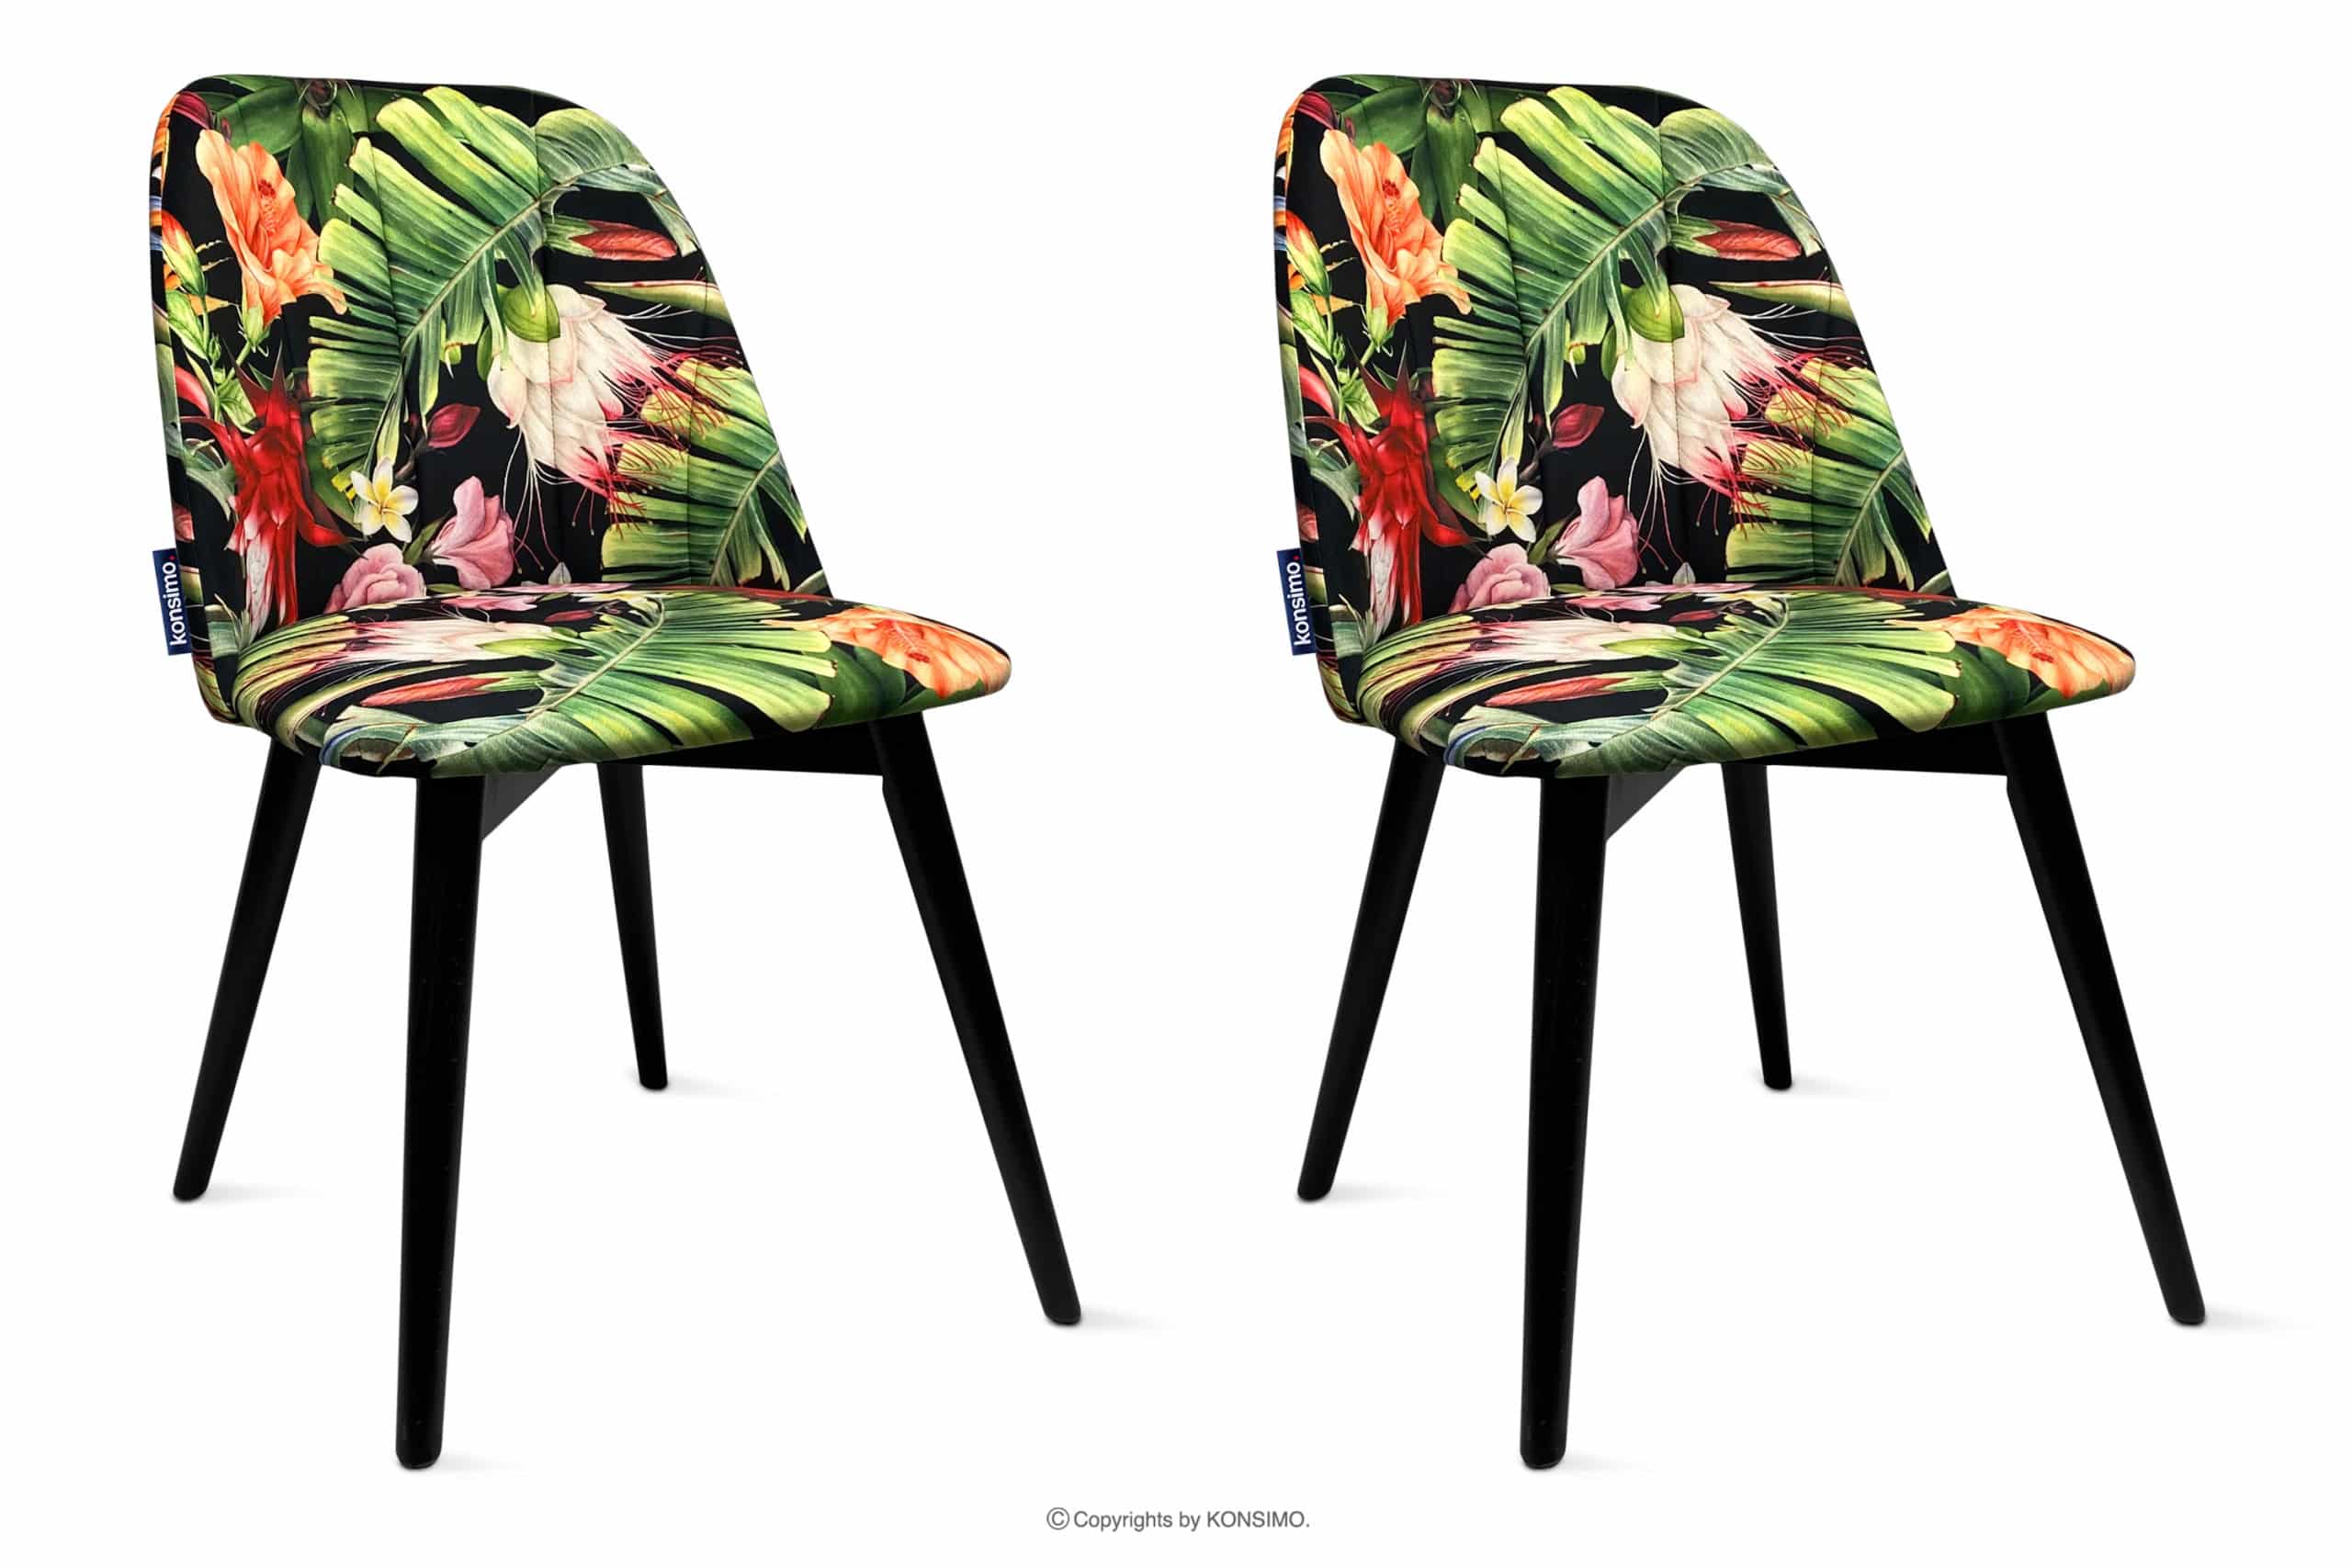 Krzesła tapicerowane we wzory kwiaty 2szt